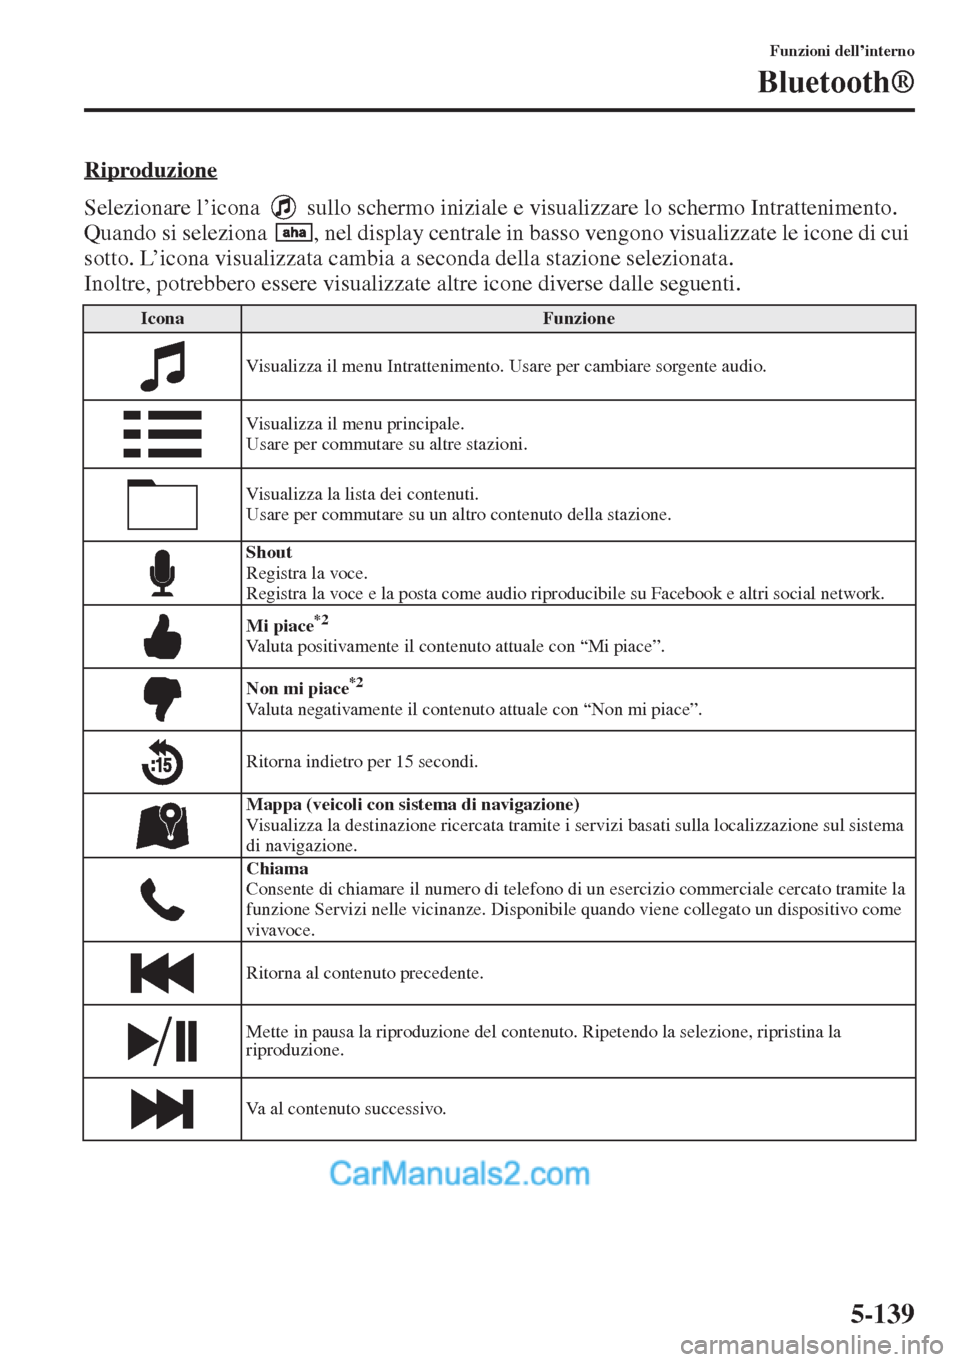 MAZDA MODEL CX-5 2015  Manuale del proprietario (in Italian) 5-139
Funzioni dell’interno
Bluetooth®
Riproduzione
Selezionare l’icona   sullo schermo iniziale e visualizzare lo schermo Intrattenimento. 
Quando si seleziona  , nel display centrale in basso v